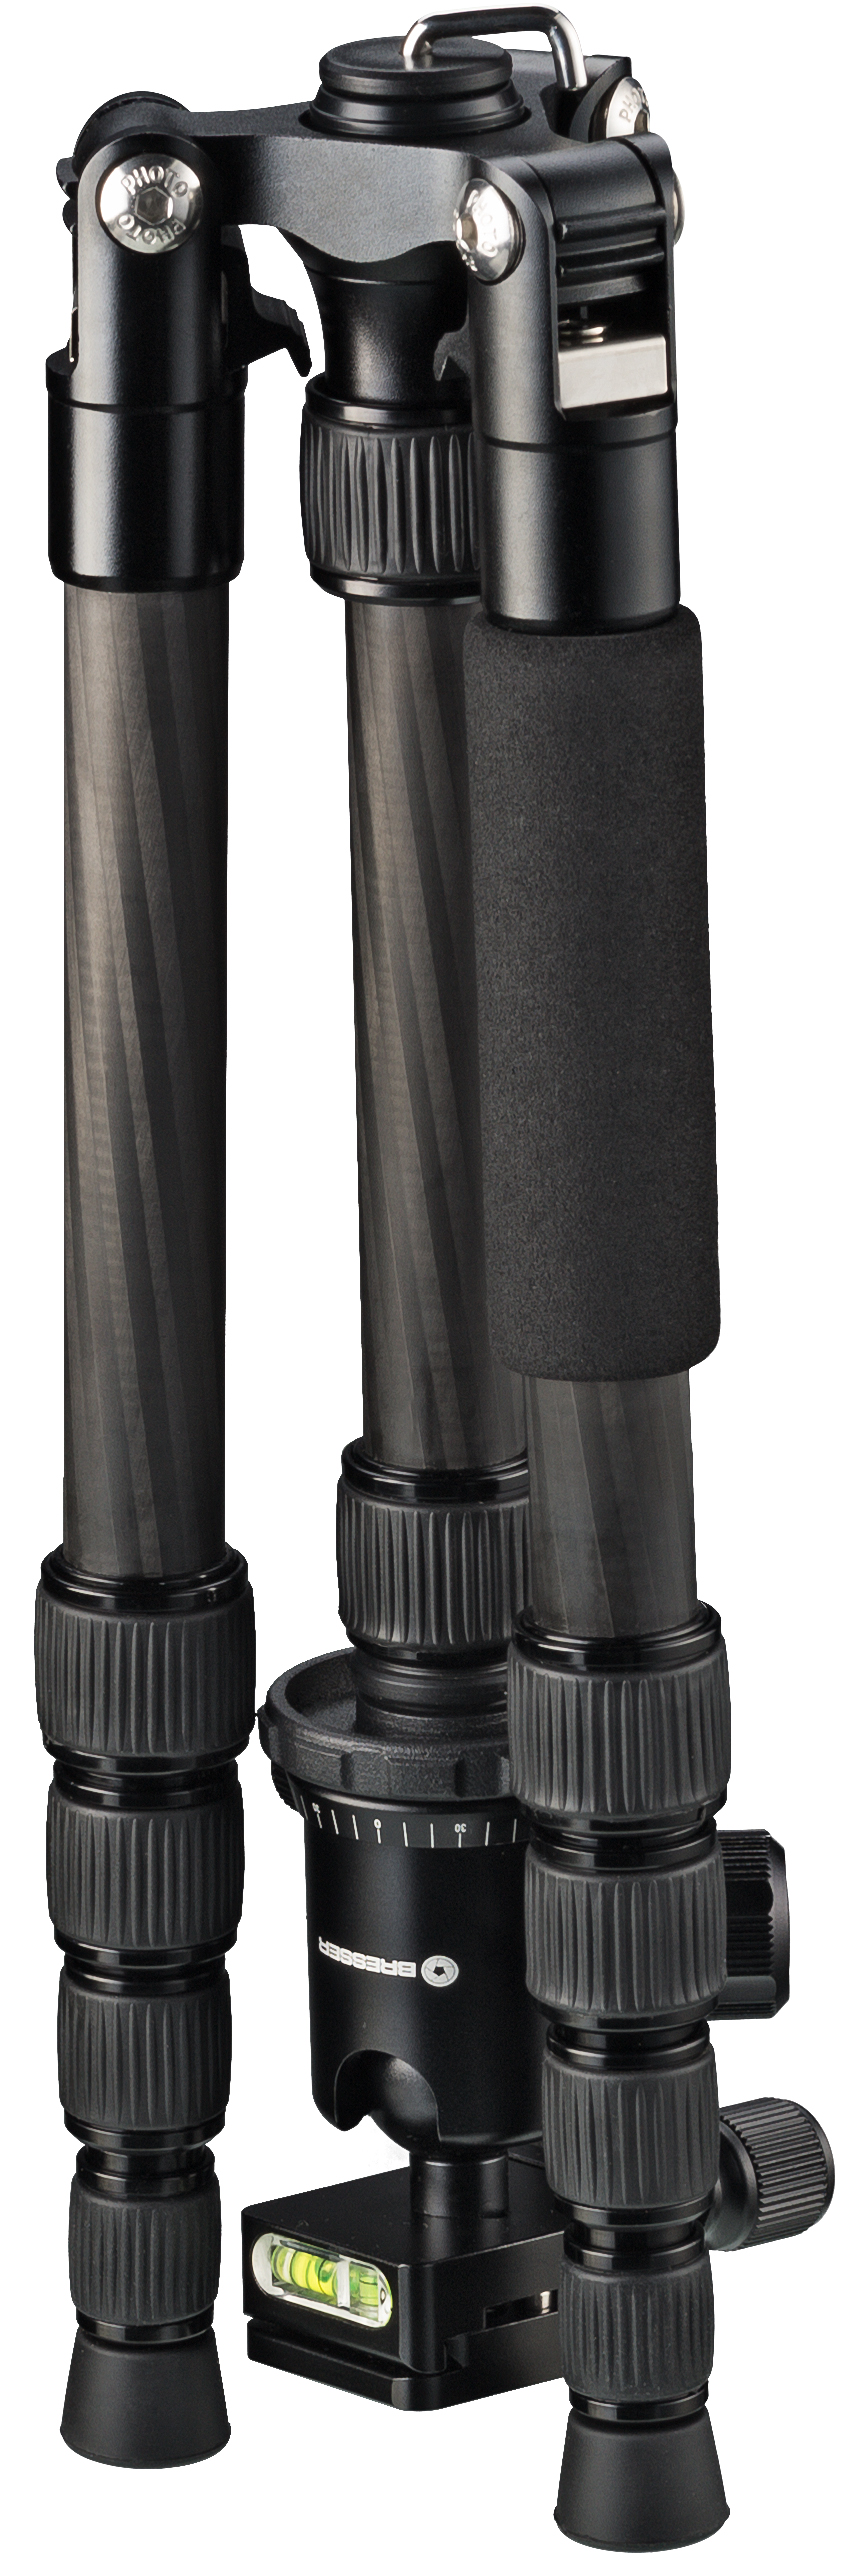 Trépied Photo Carbone BRESSER BR-2205-N1 jusqu'à 8 kg utilisable comme pied ou trépied